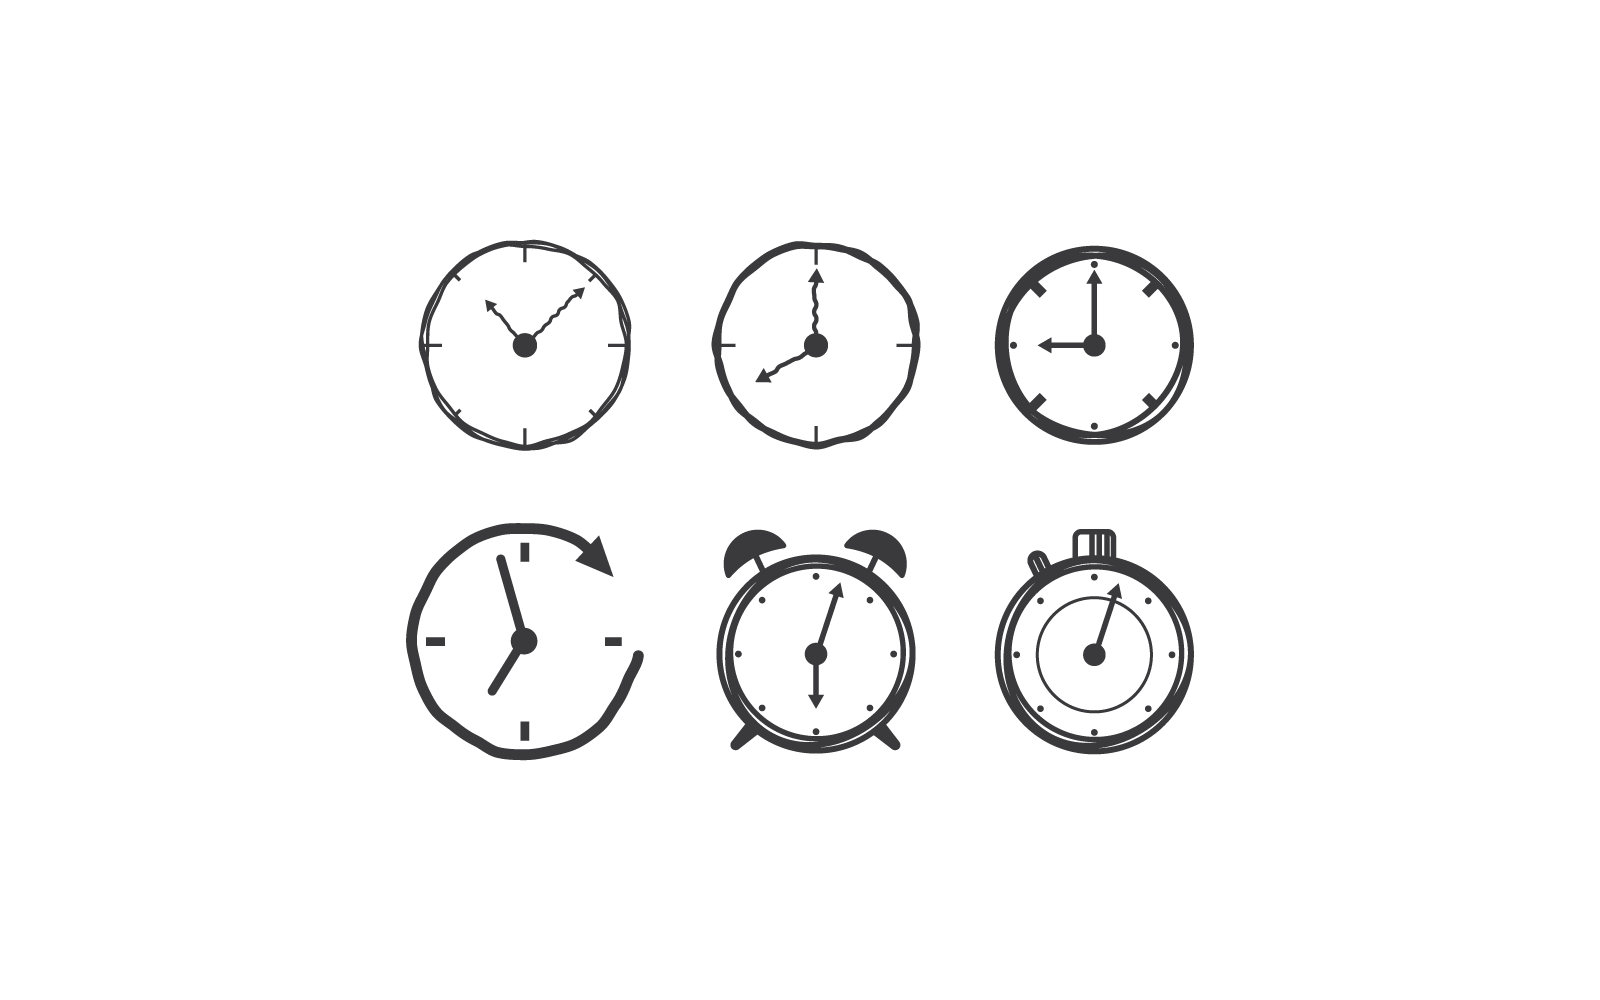 Flaches Design des O-Clock-Illustrationsvektors